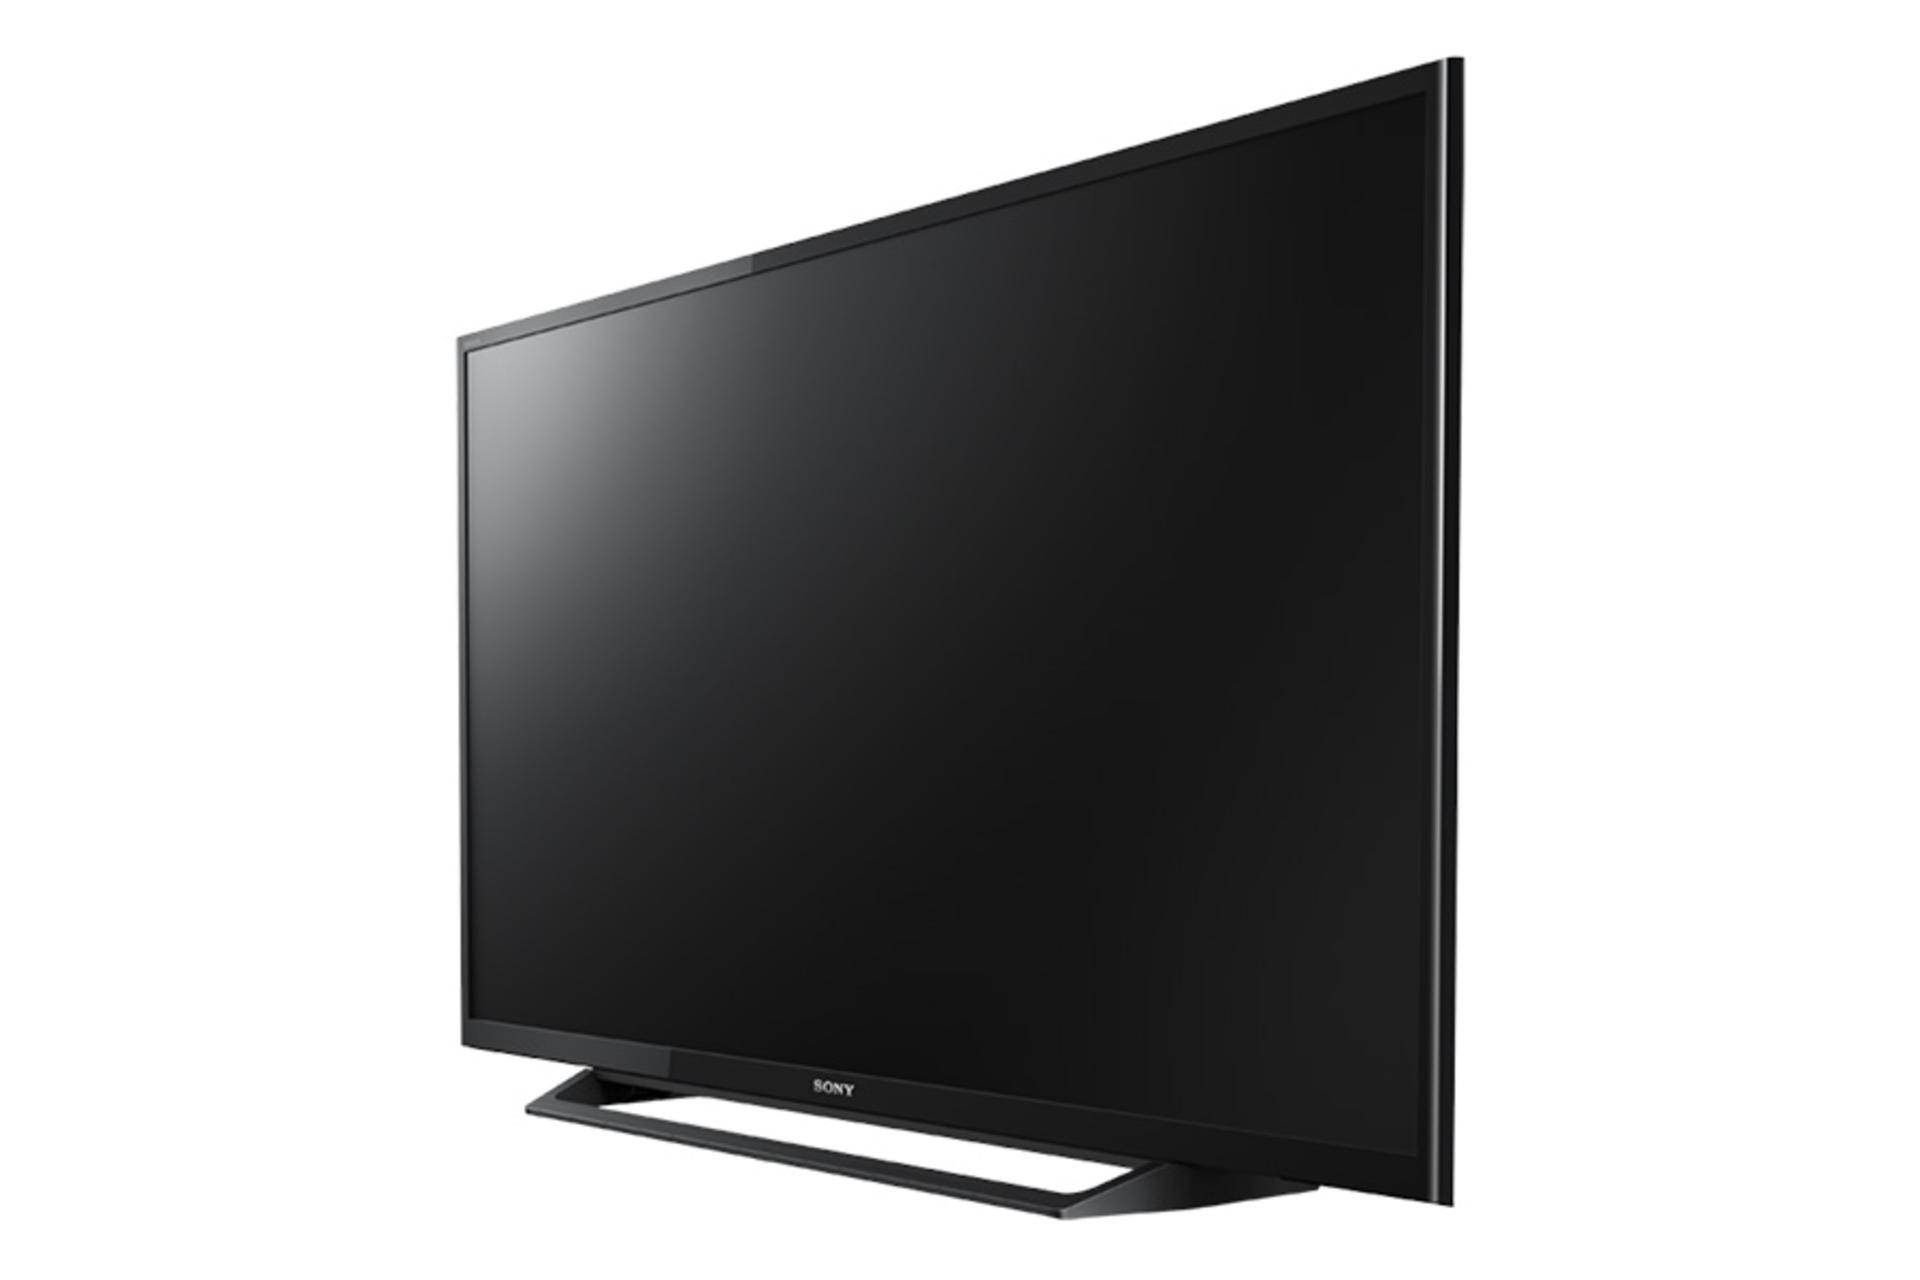 نمای نیم رخ چپ تلویزیون سونی R300E مدل 32 اینچ